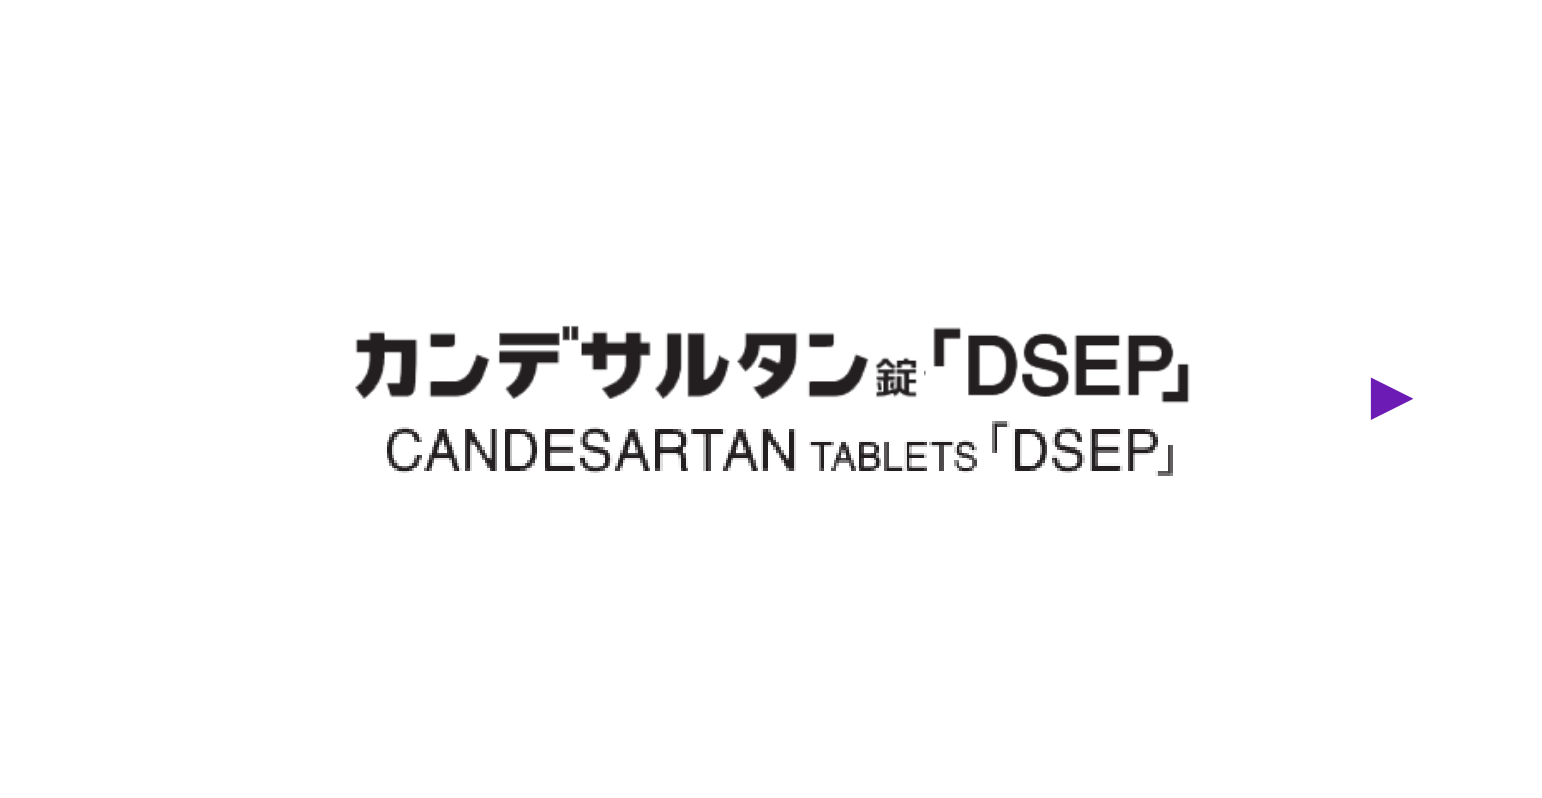 カンデサルタン錠「DSEP」